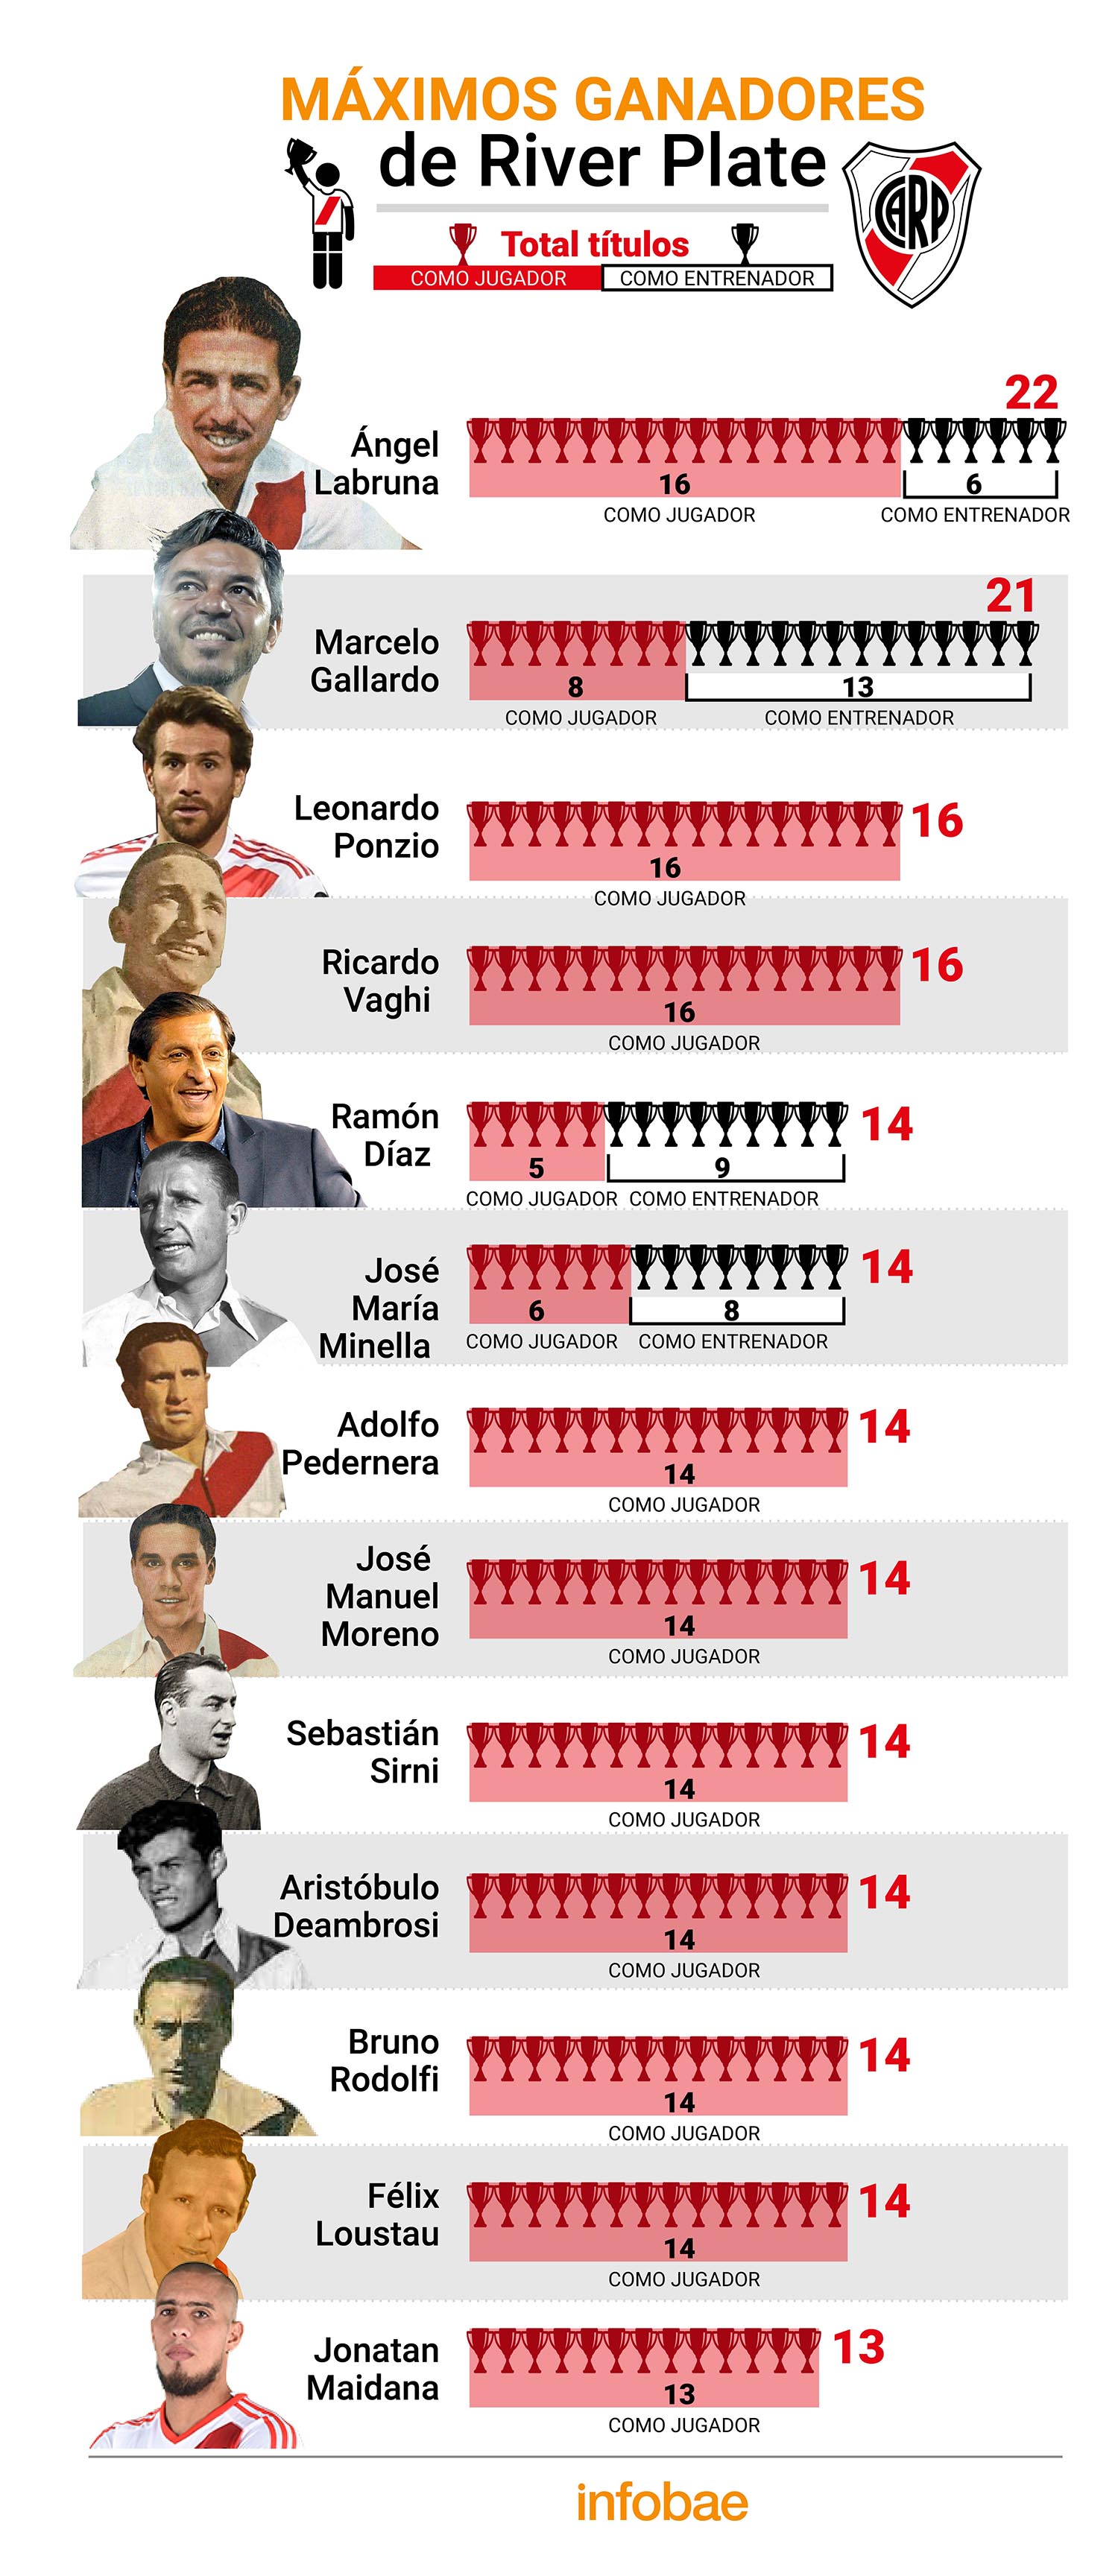 Los máximos ganadores de River Plate